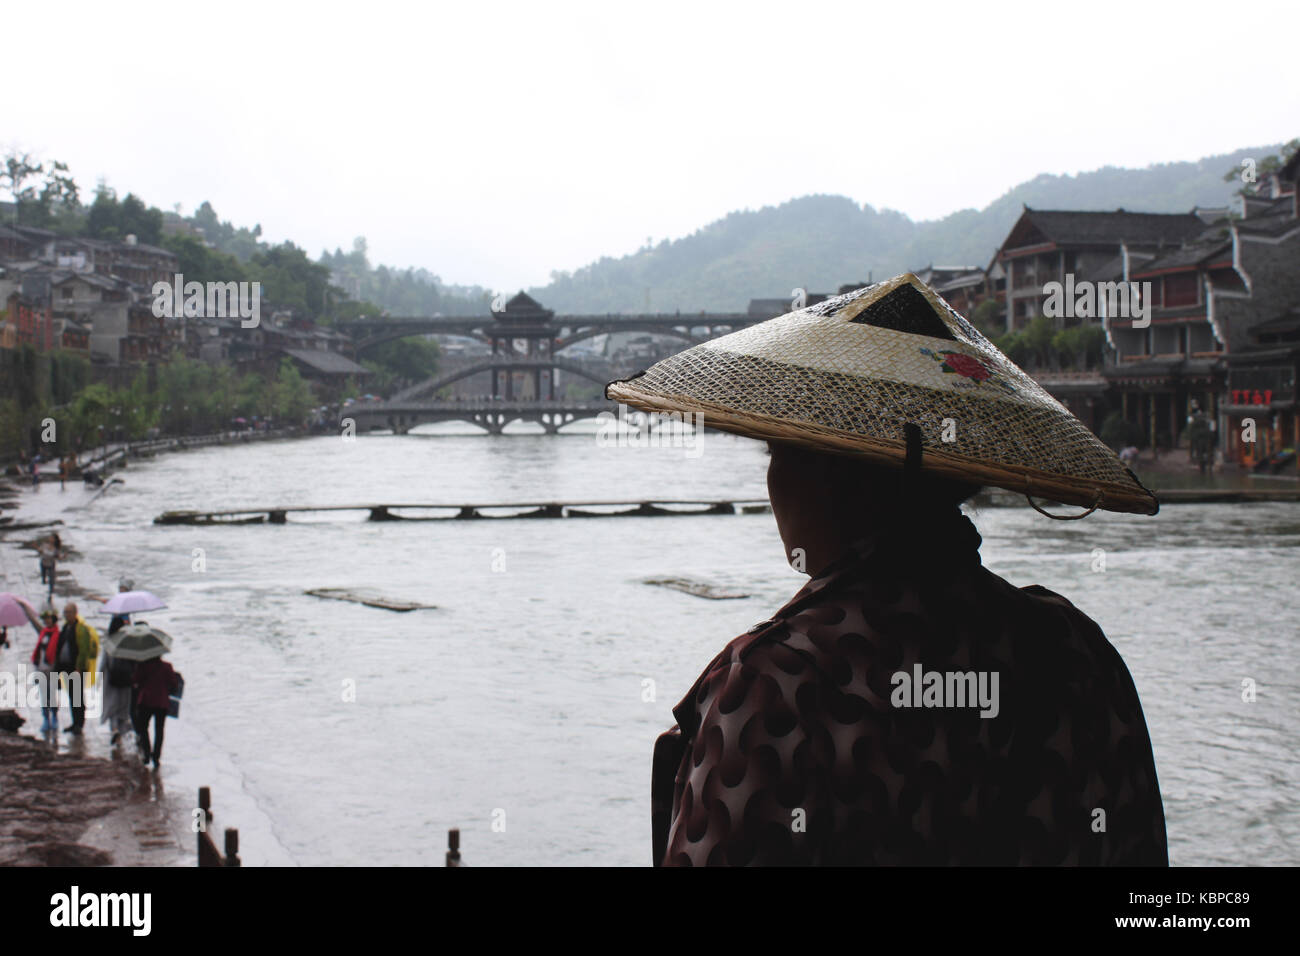 Les chinois locaux à la recherche au niveau de la rivière à fenghuang, Chine Banque D'Images